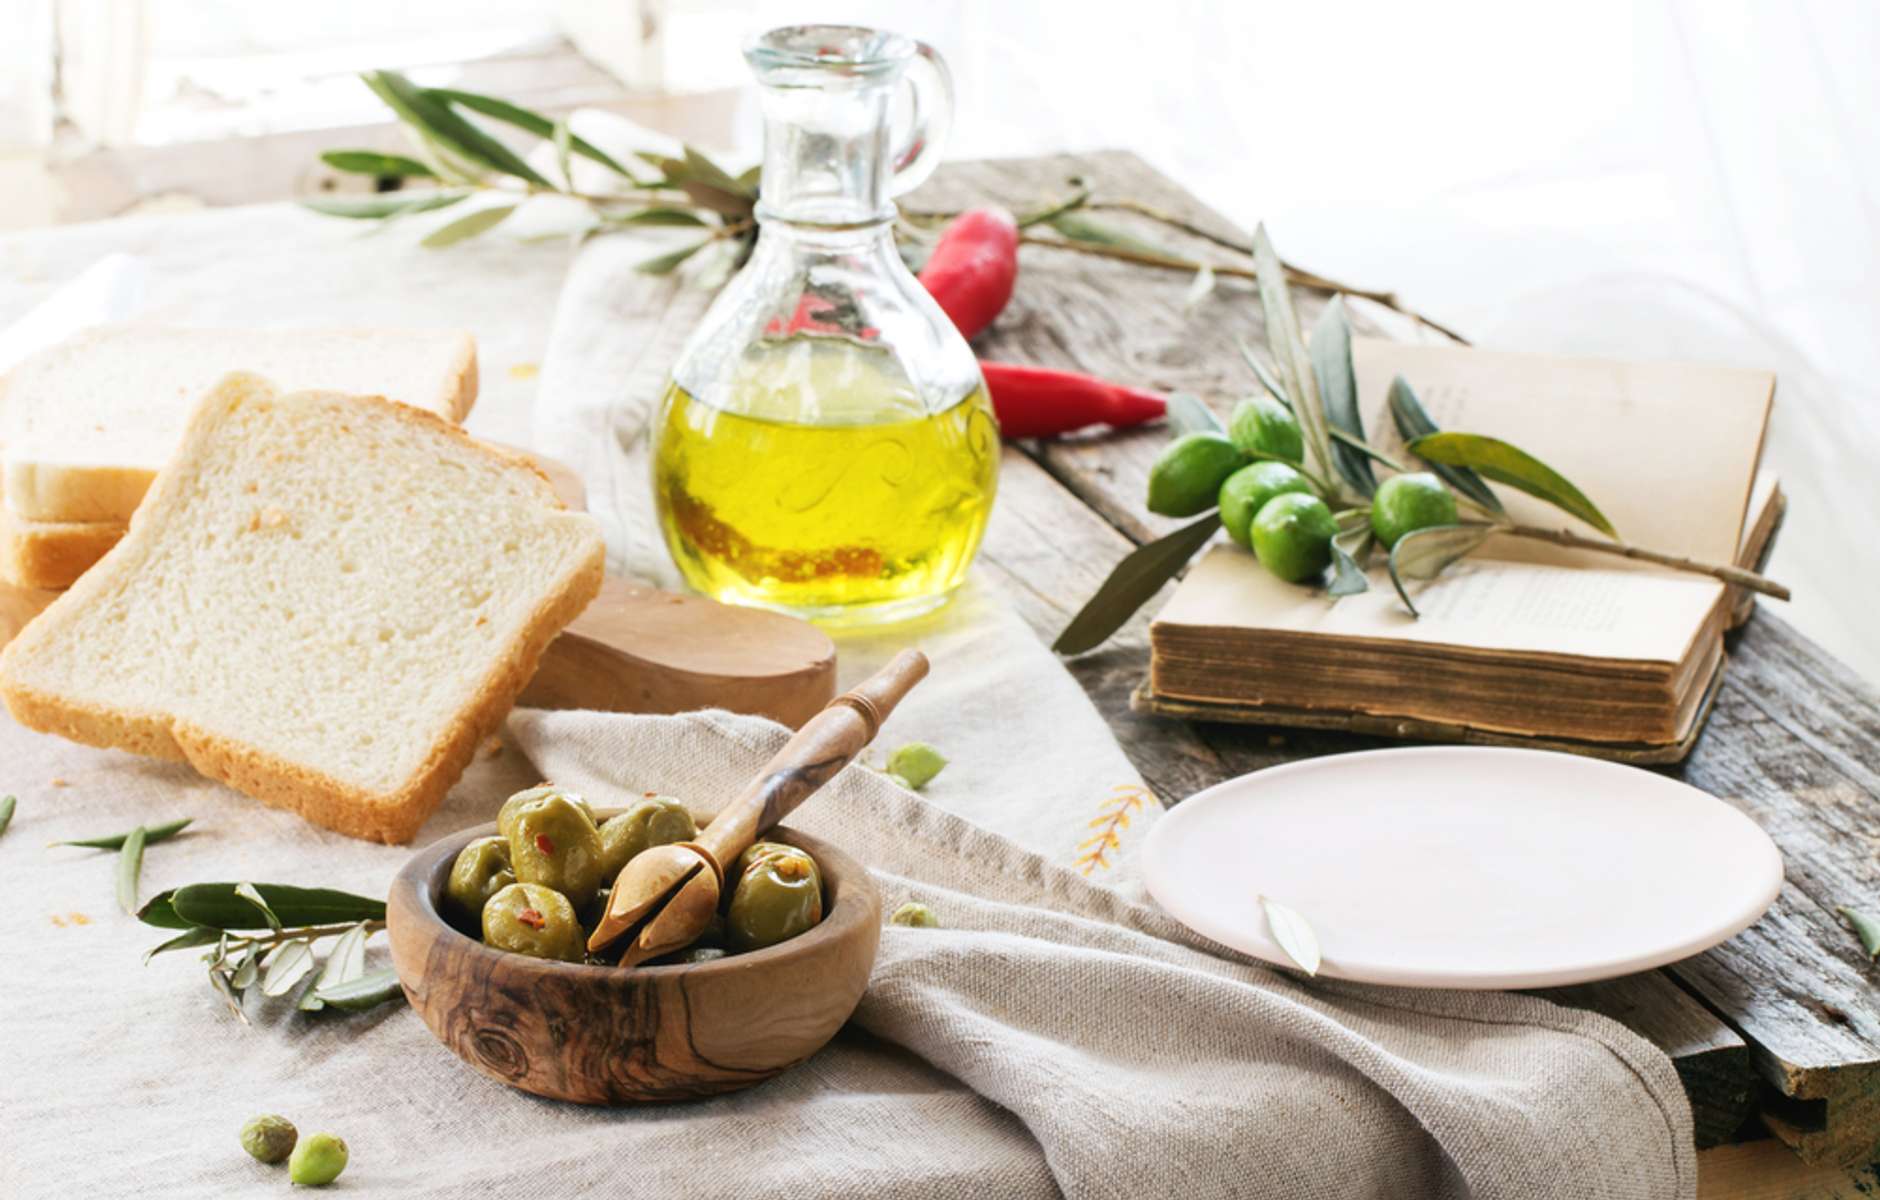 Bread olive oil. Хлеб с оливковым маслом. Сыр в оливковом масле. Хлеб с оливковым маслом и оливами. Хлебные квадратики с оливковым маслом.